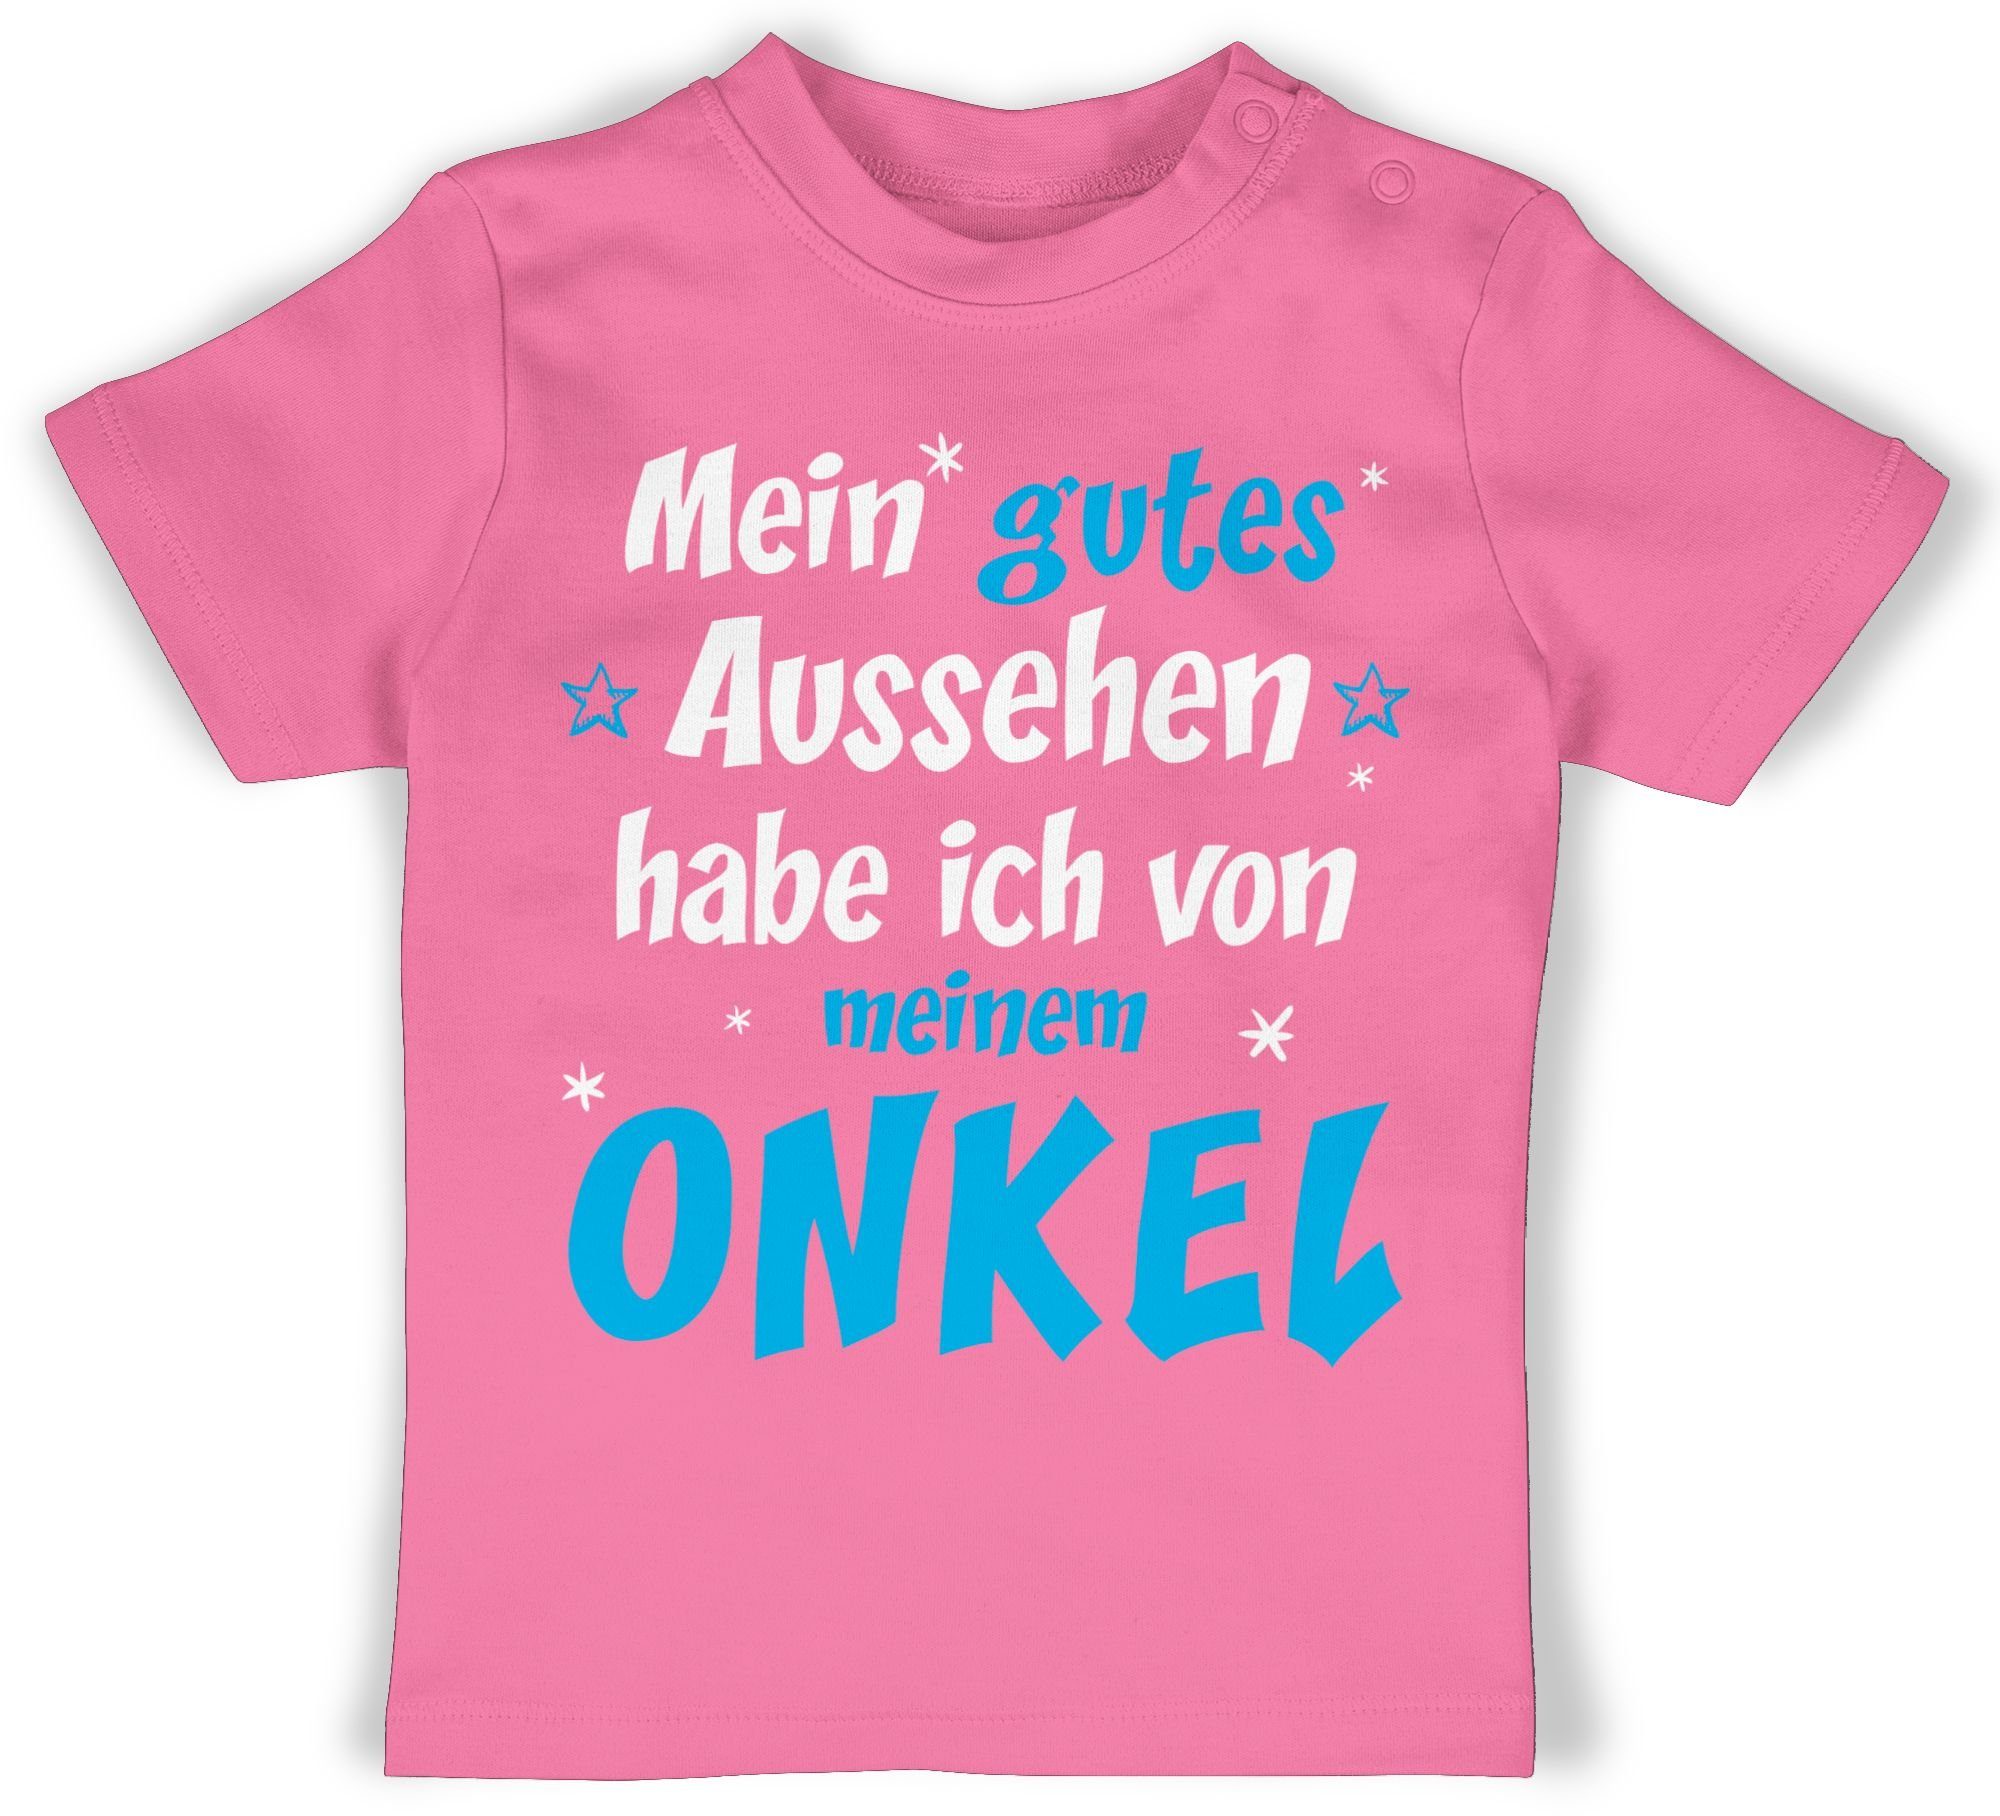 ich von meinem Mein Baby Onkel 2 Aussehen Shirtracer habe ONKEL Sprüche Pink gutes - T-Shirt Spruch